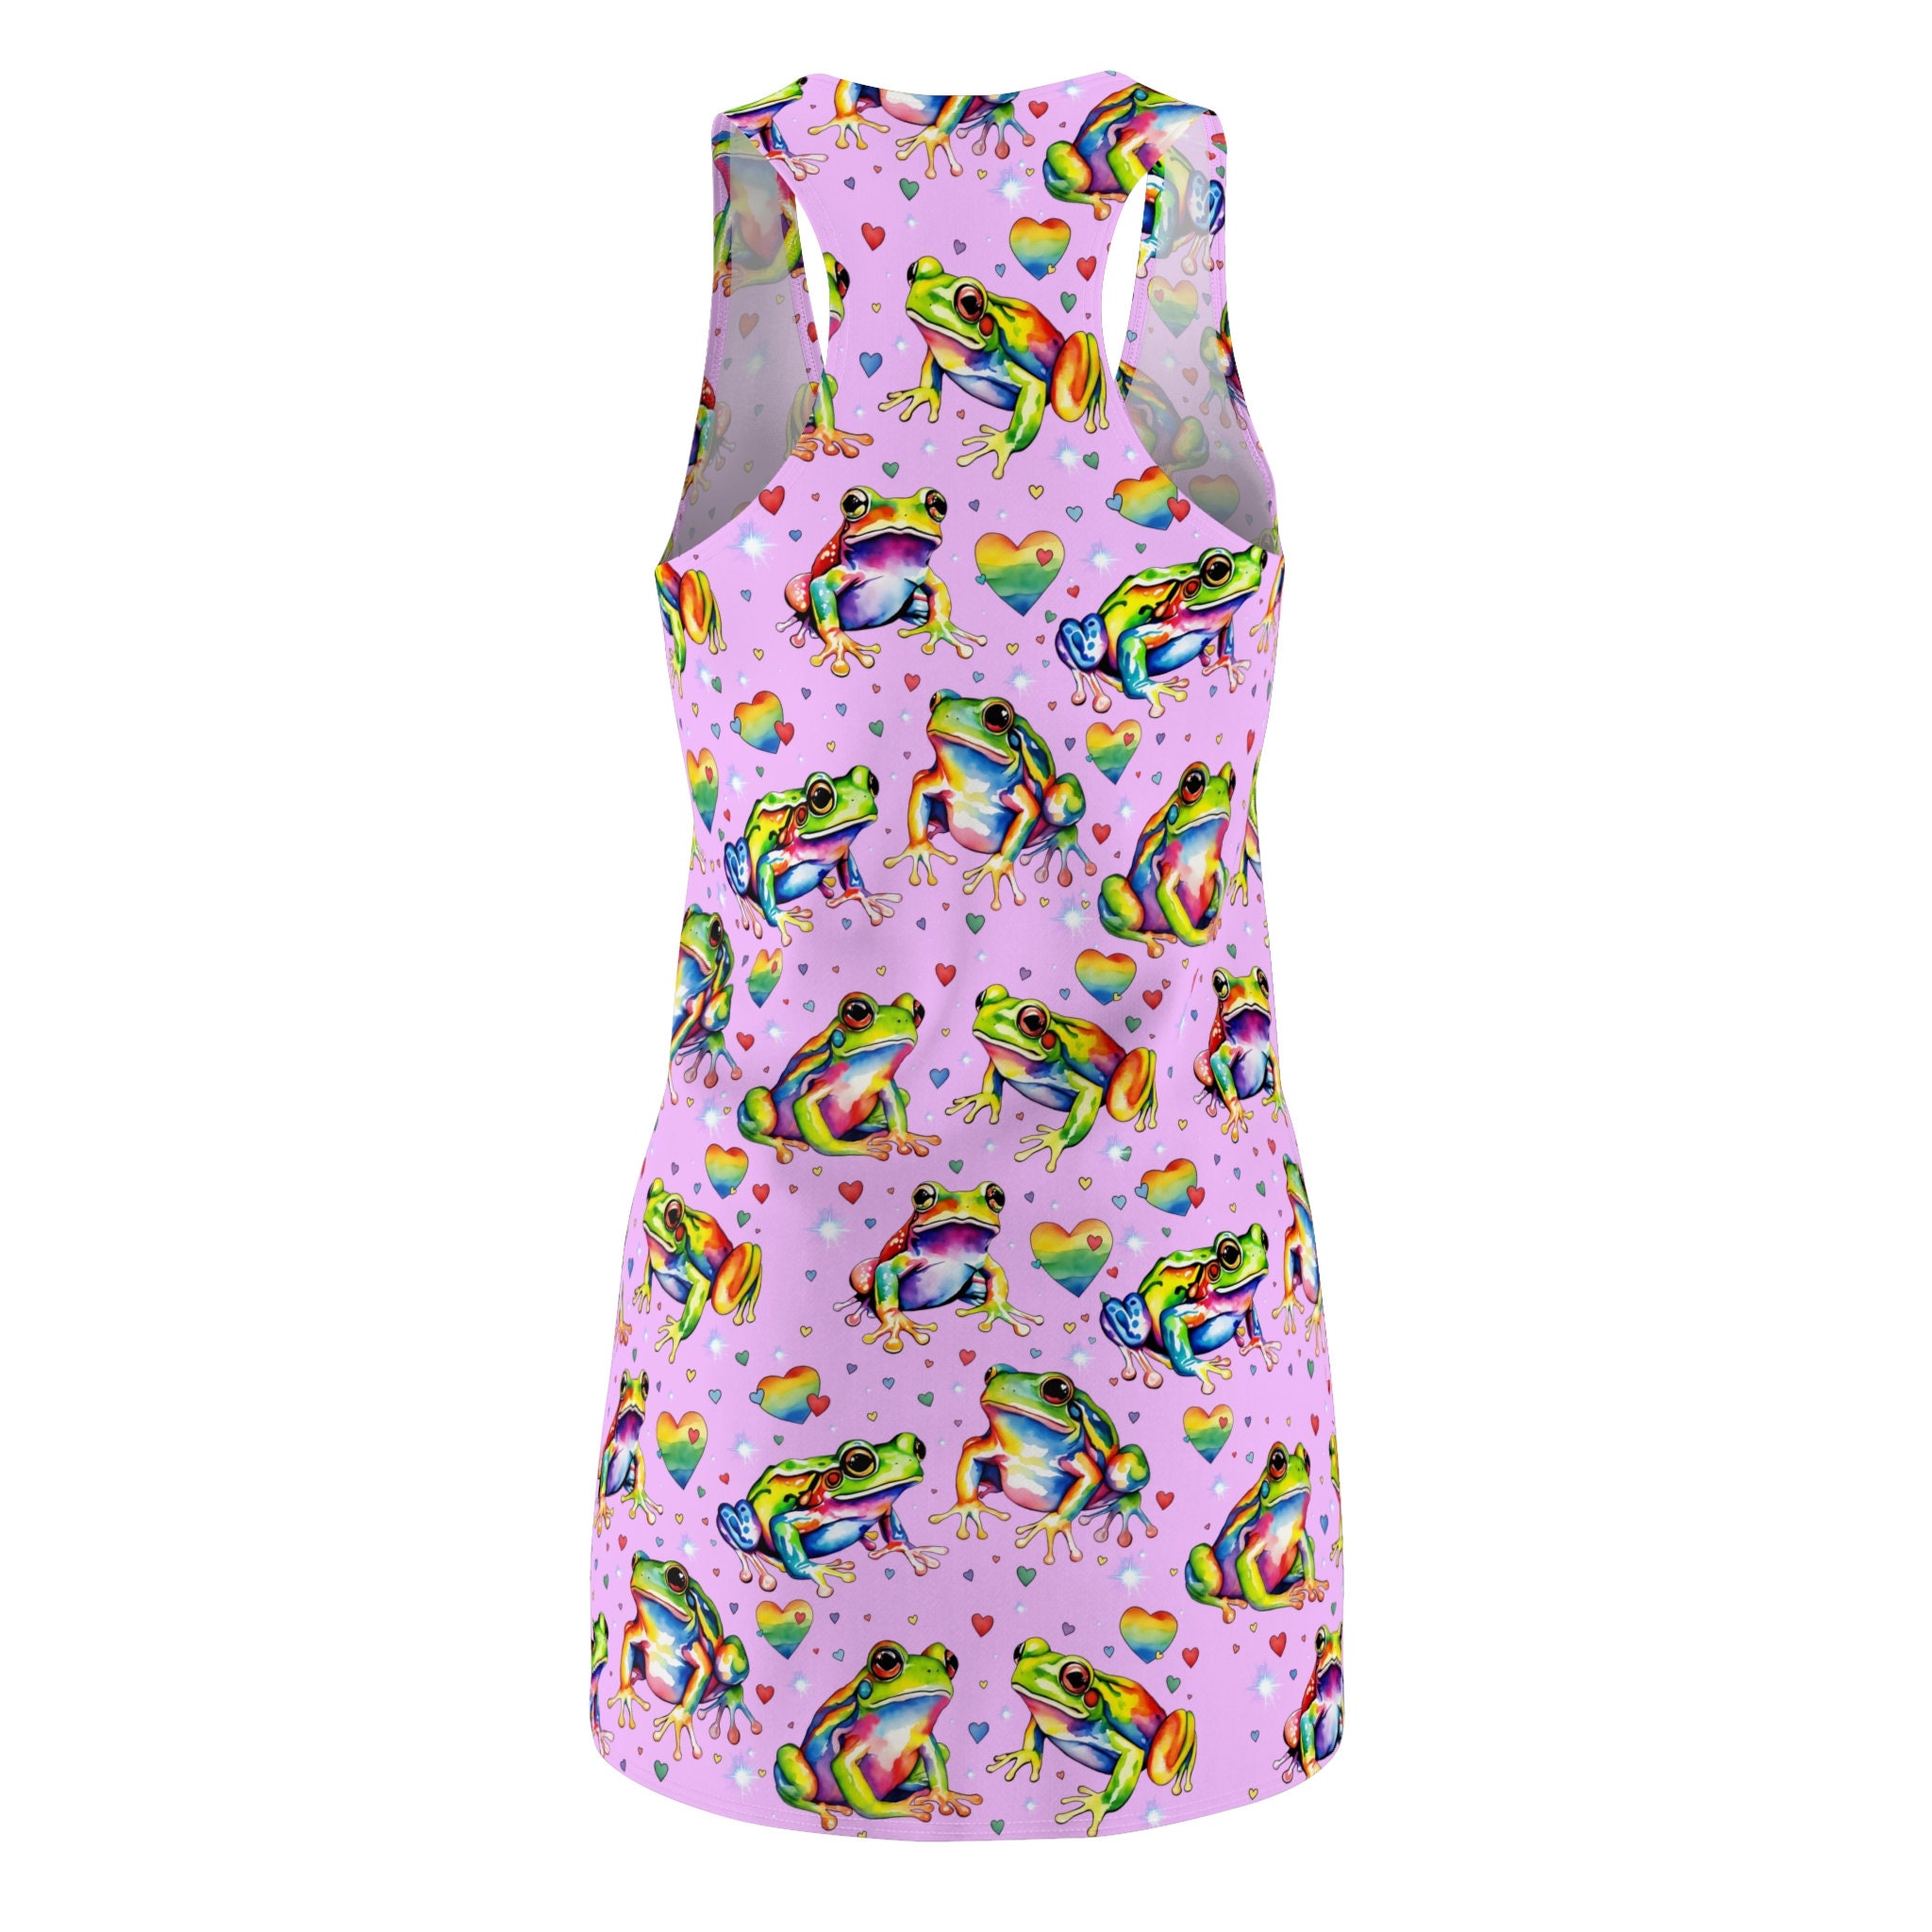 Rainbow Frogs Women's Cut & Sew Racerback Dress